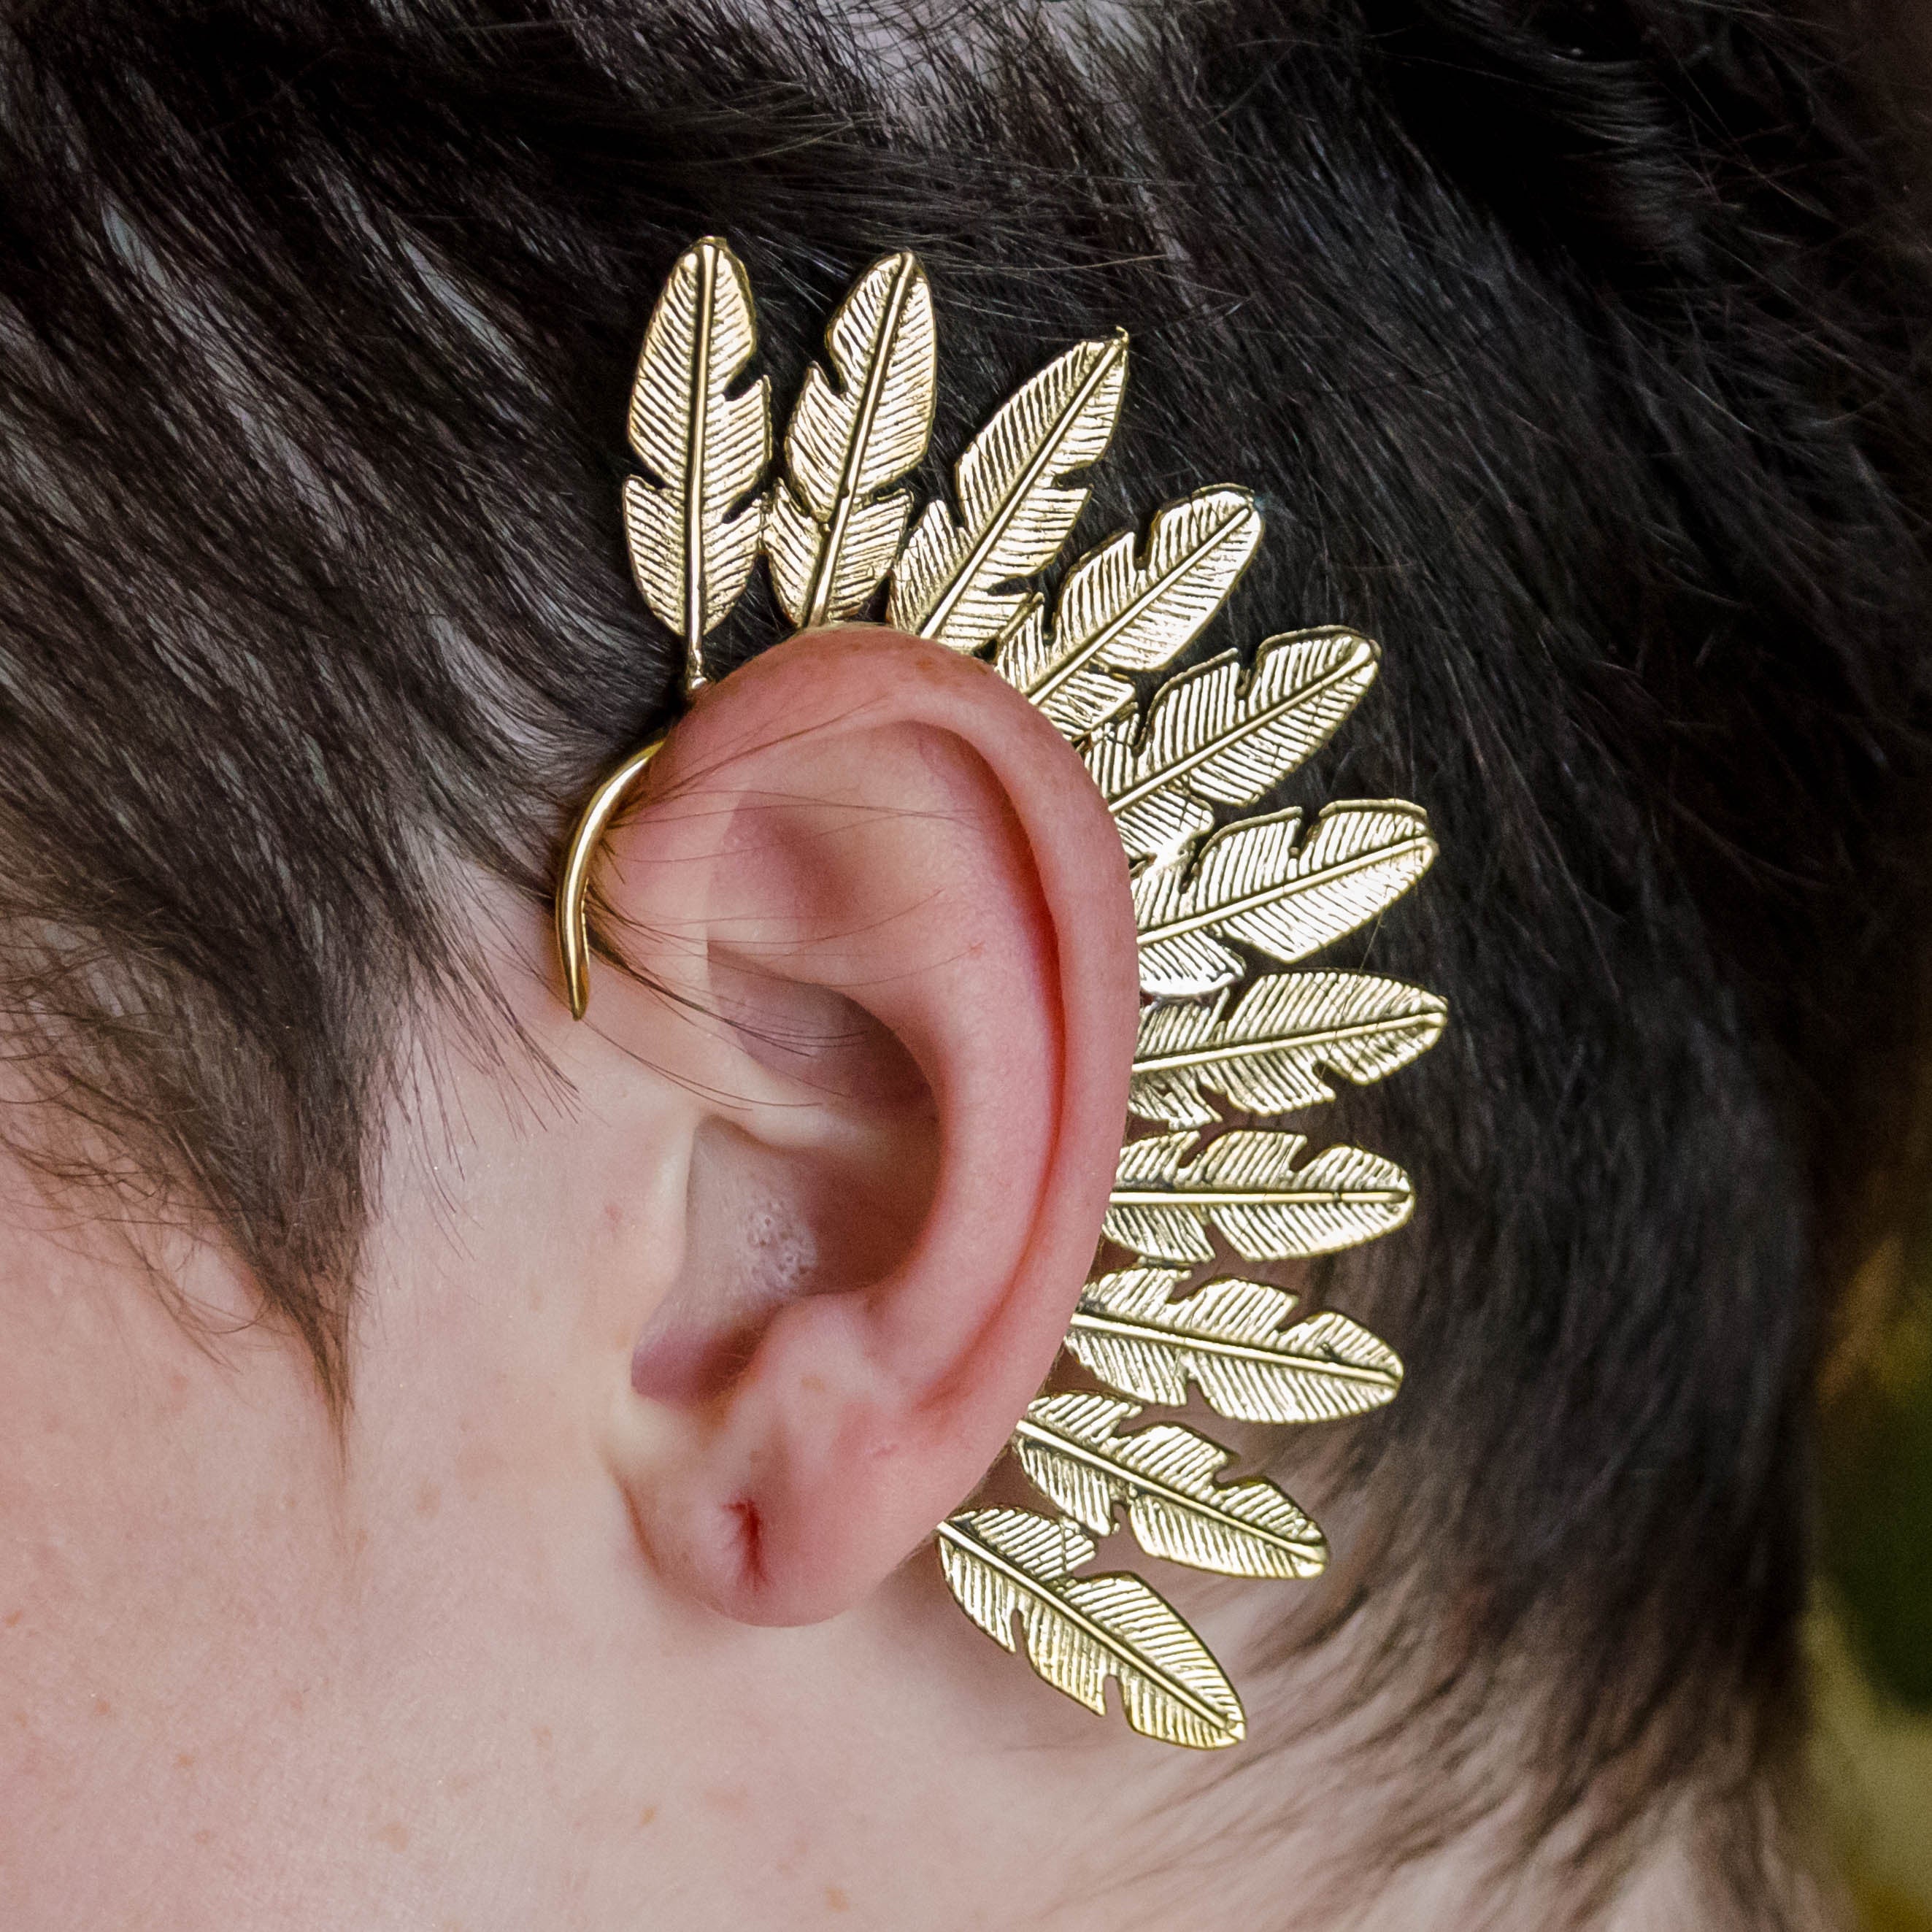 Ear Cuff Unique Boho Clip On Earrings Tribal Brass Jewelry